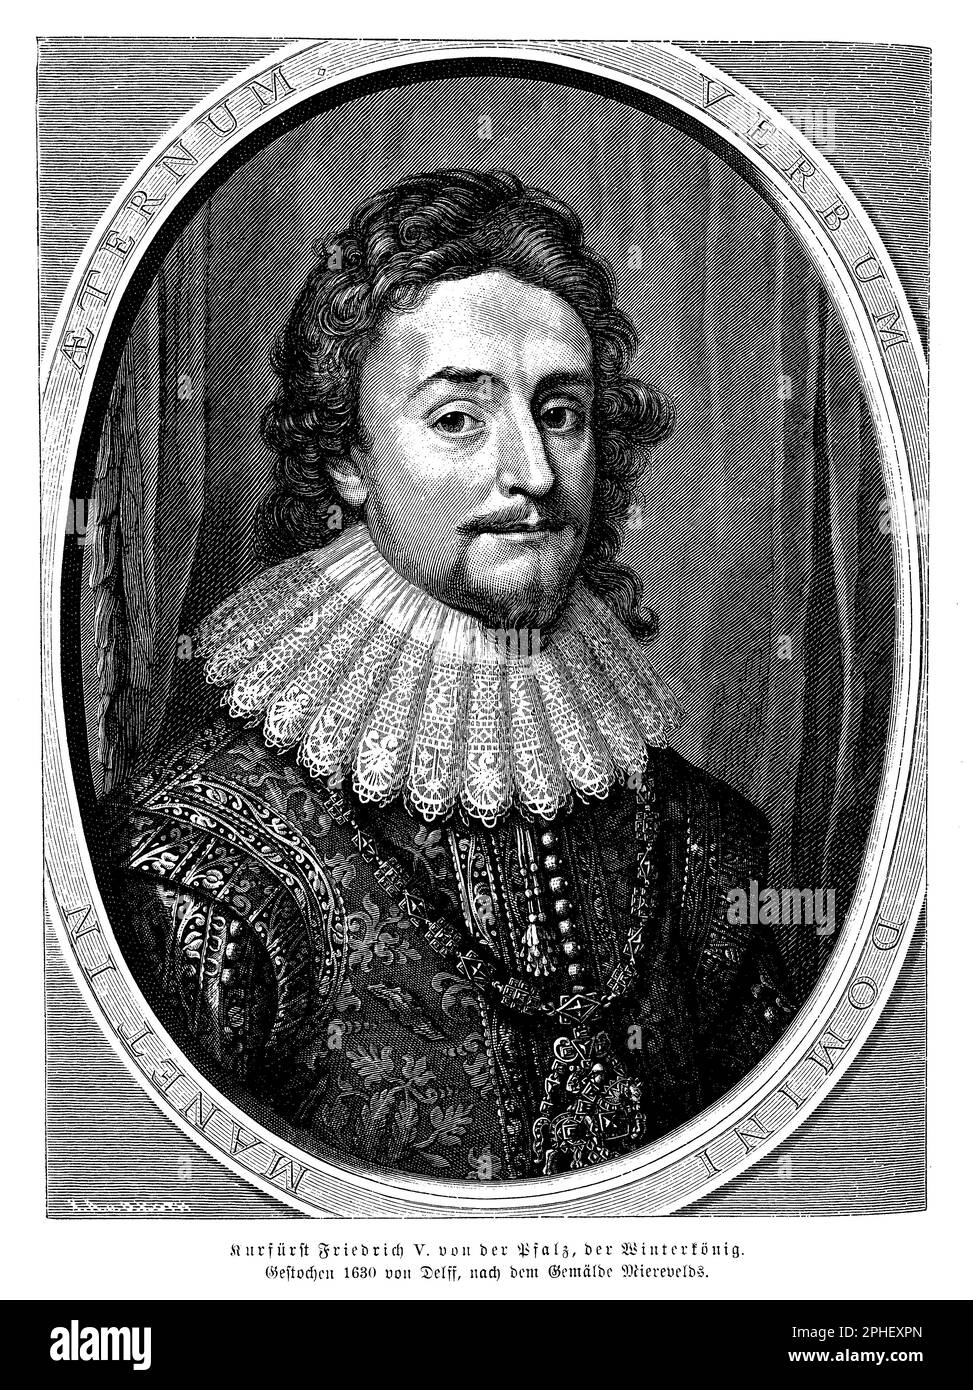 Frederick V (1596-1632), auch bekannt als Winterkönig, war der Elector Palatin des Rheins und kurz König von Böhmen in den ersten Jahren des Dreißigjährigen Krieges. Er war ein protestantischer Führer und spielte eine Schlüsselrolle bei der böhmischen Revolte, die mit der Verteidigung von Prag begann. Fredericks Herrschaft war geprägt von politischen und militärischen Rückschlägen, die in seiner Niederlage in der Schlacht am Weißen Berg im Jahr 1620 gipfelten, die zu seinem Exil und der Beschlagnahme seines Landes führte. Trotzdem blieb er ein Symbol des protestantischen Widerstands und sein Vermächtnis im Gedenken an seine Anhänger Stockfoto